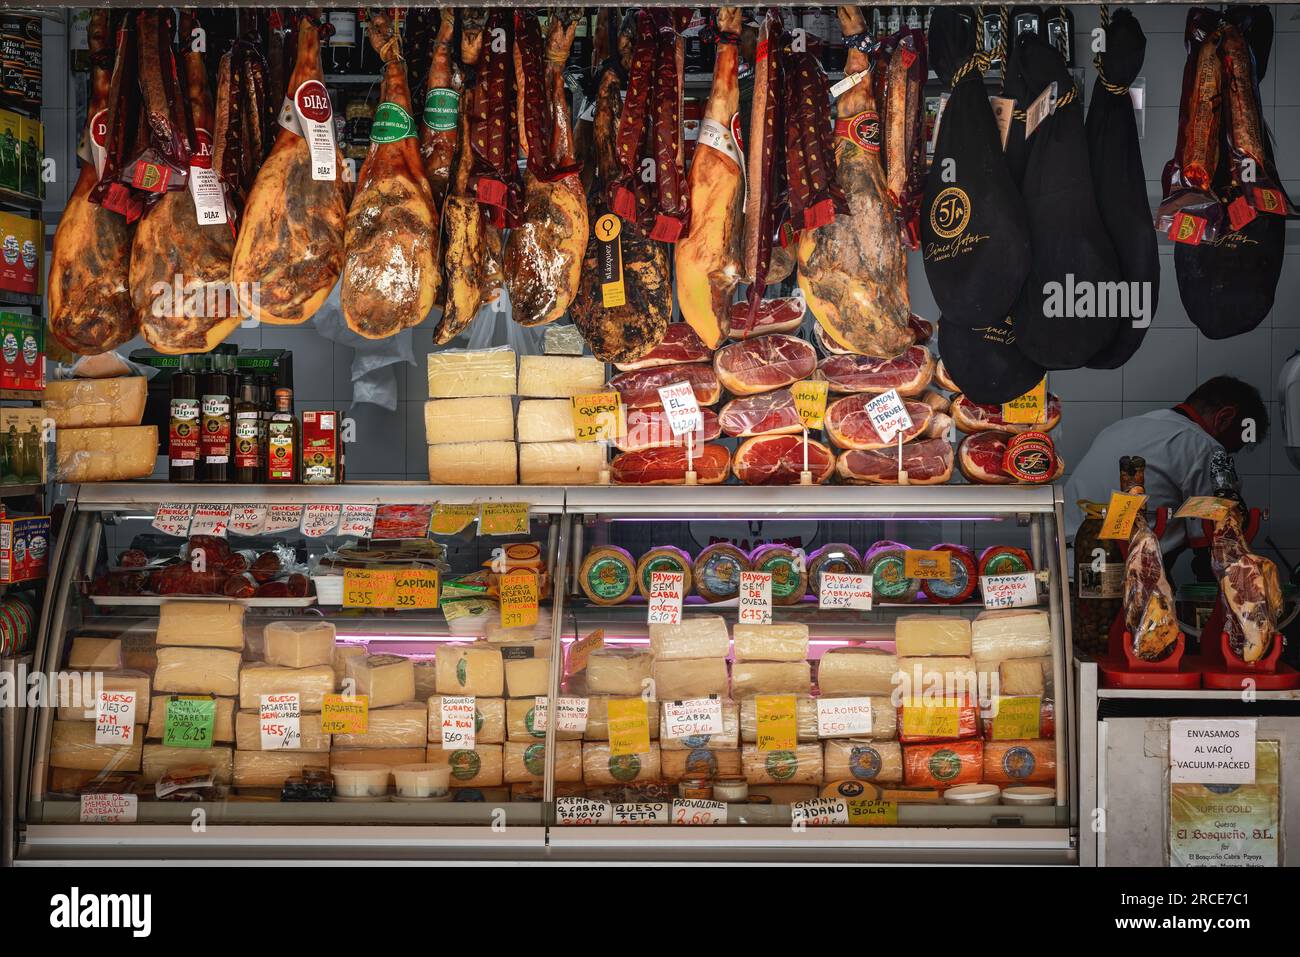 Market Stall avec des morceaux de Jamon ibérique (jambon ibérique) et fromage - Cadix, Andalousie, Espagne Banque D'Images